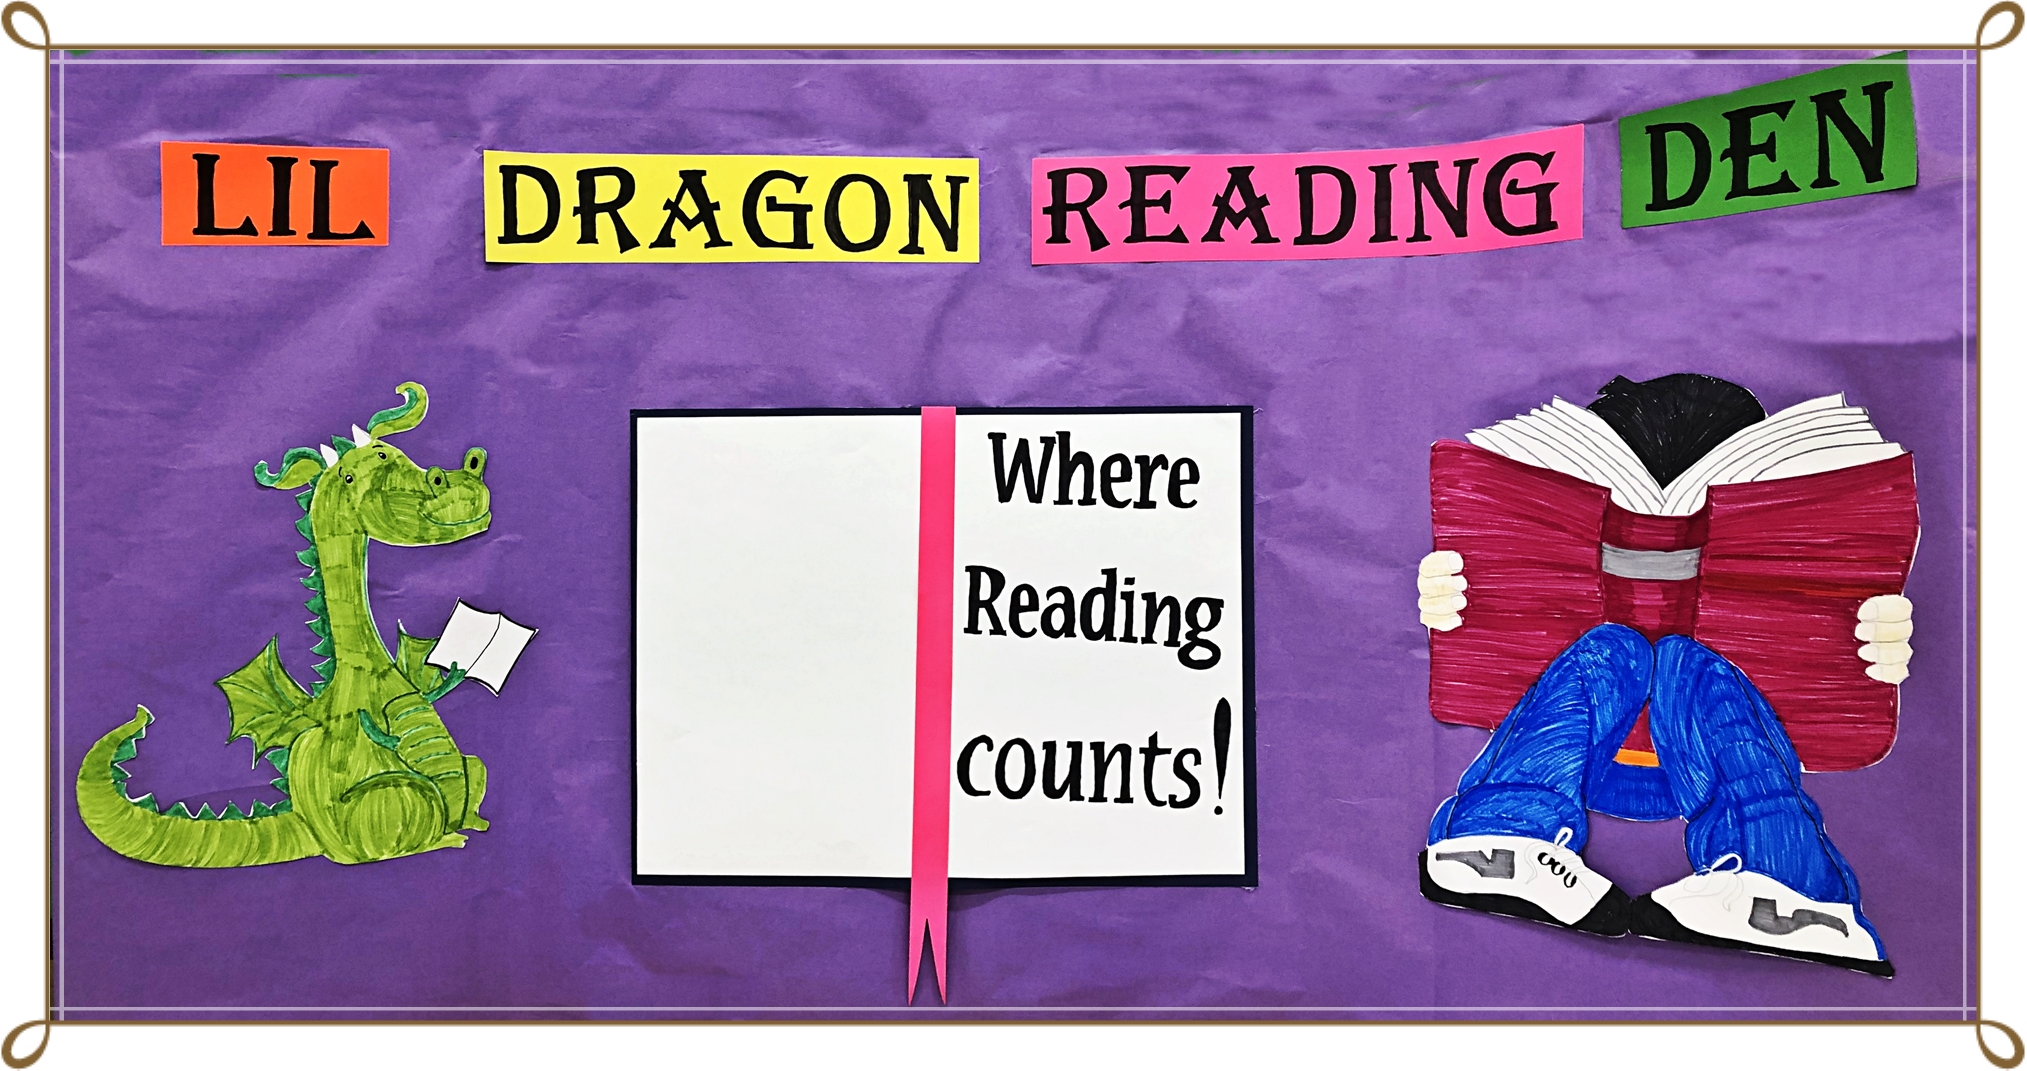 Lil Dragon Reading Den